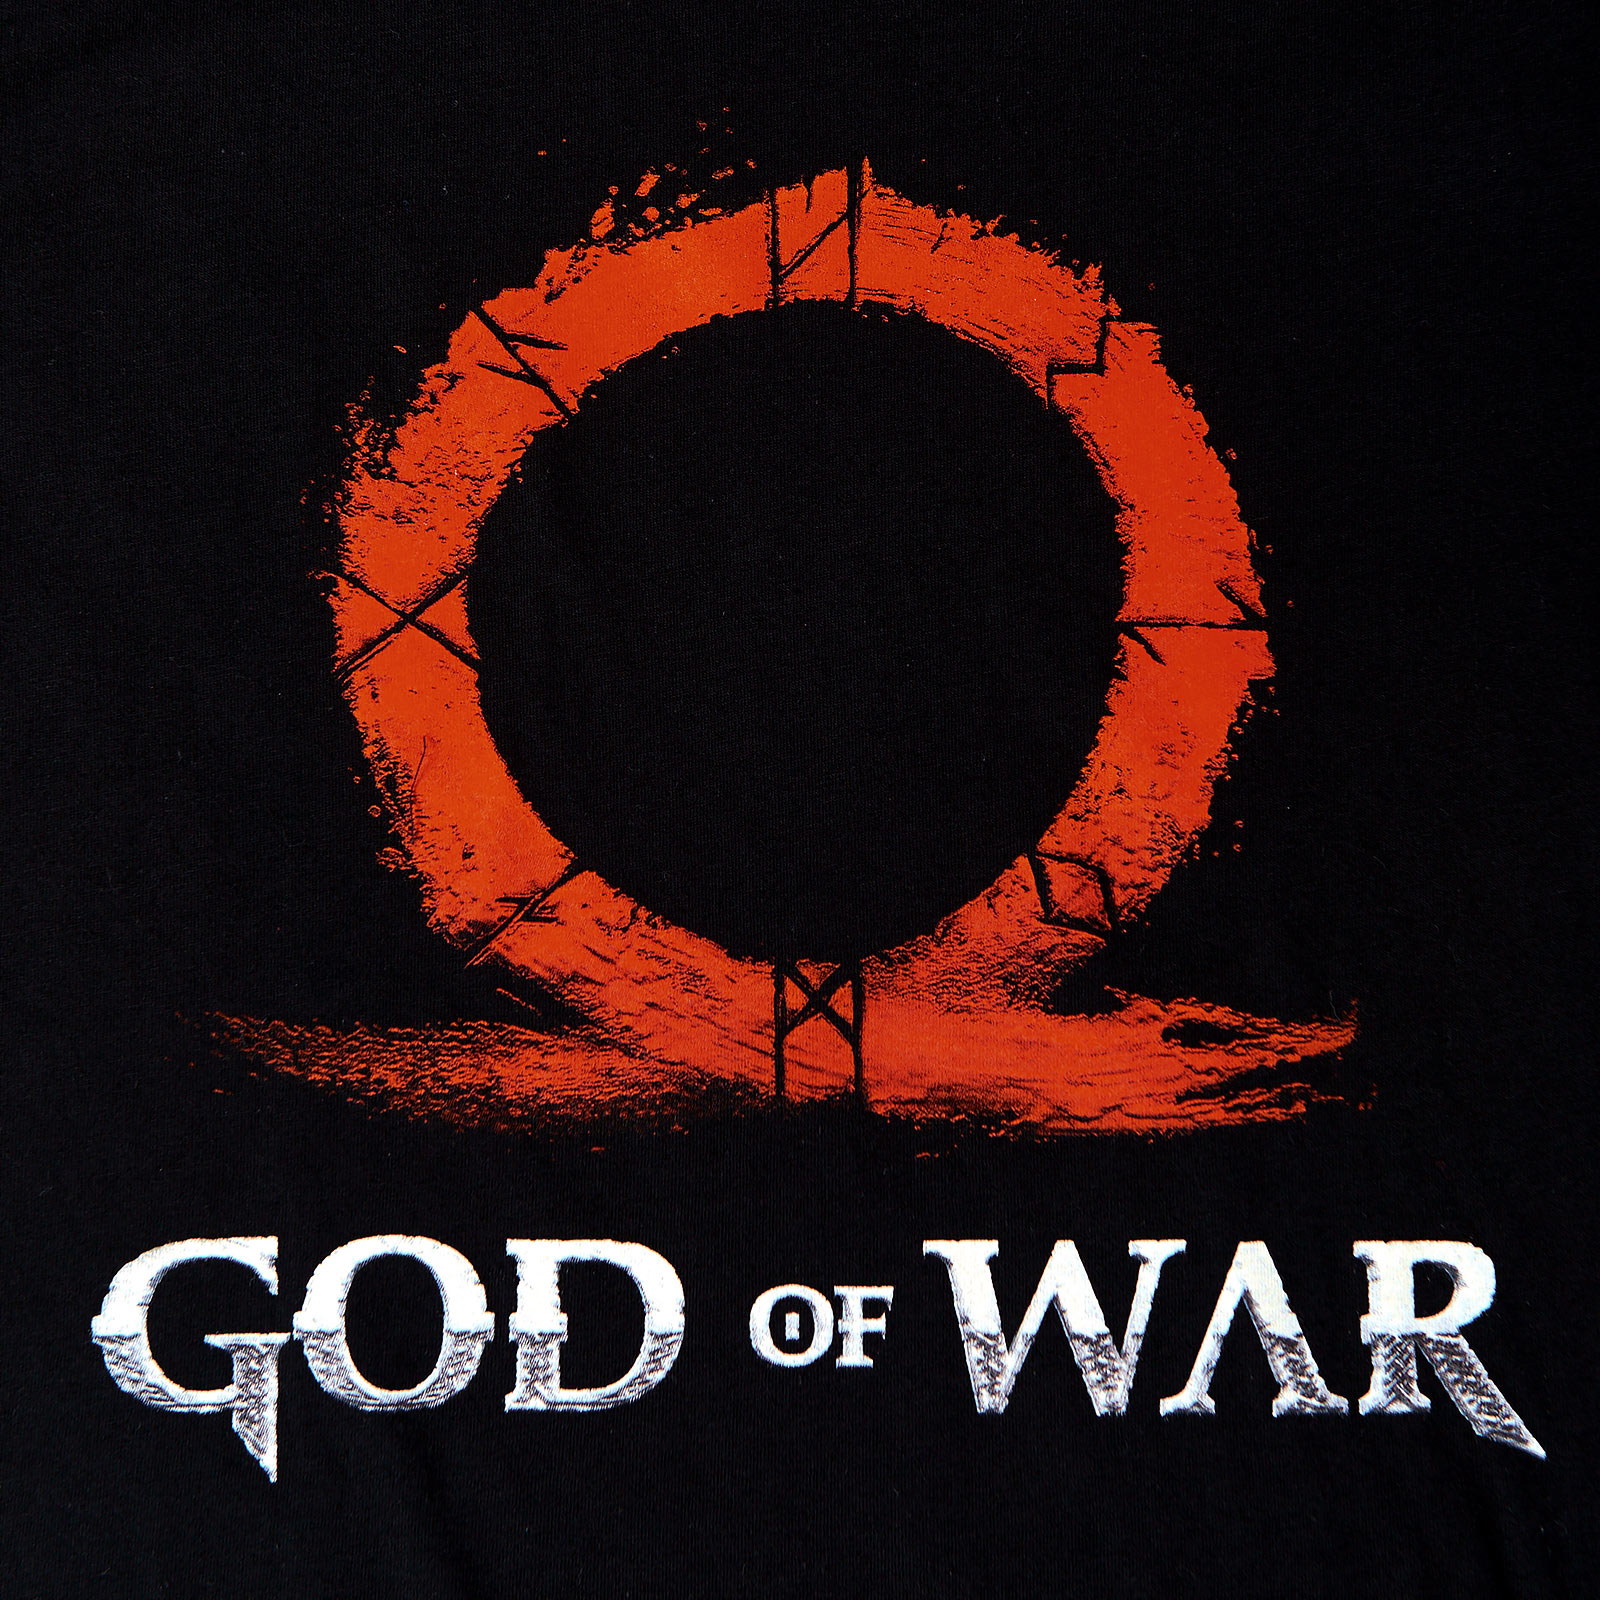 God of War - T-shirt logo rouge noir